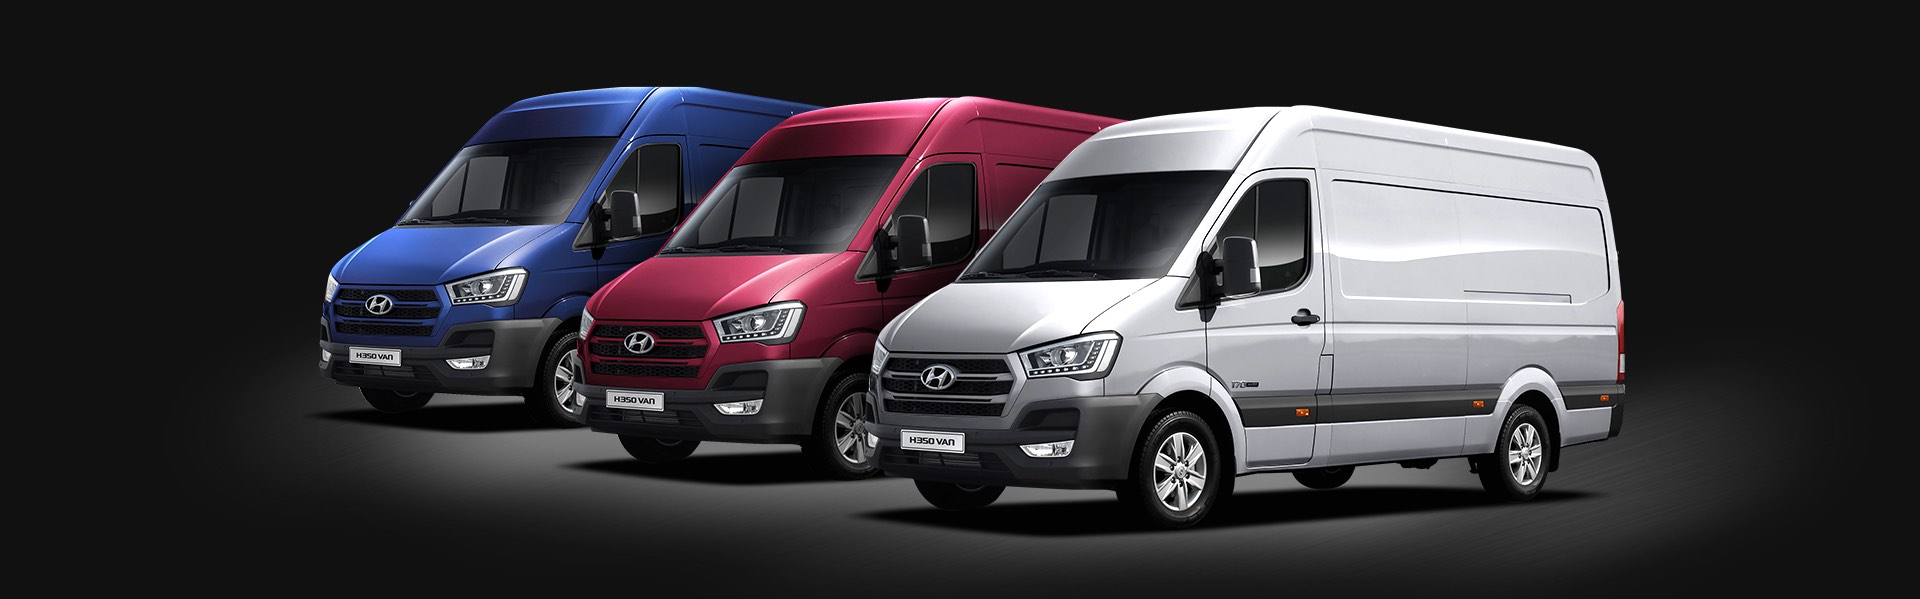 Diseño de color - Hyundai buses y camiones Ecuador